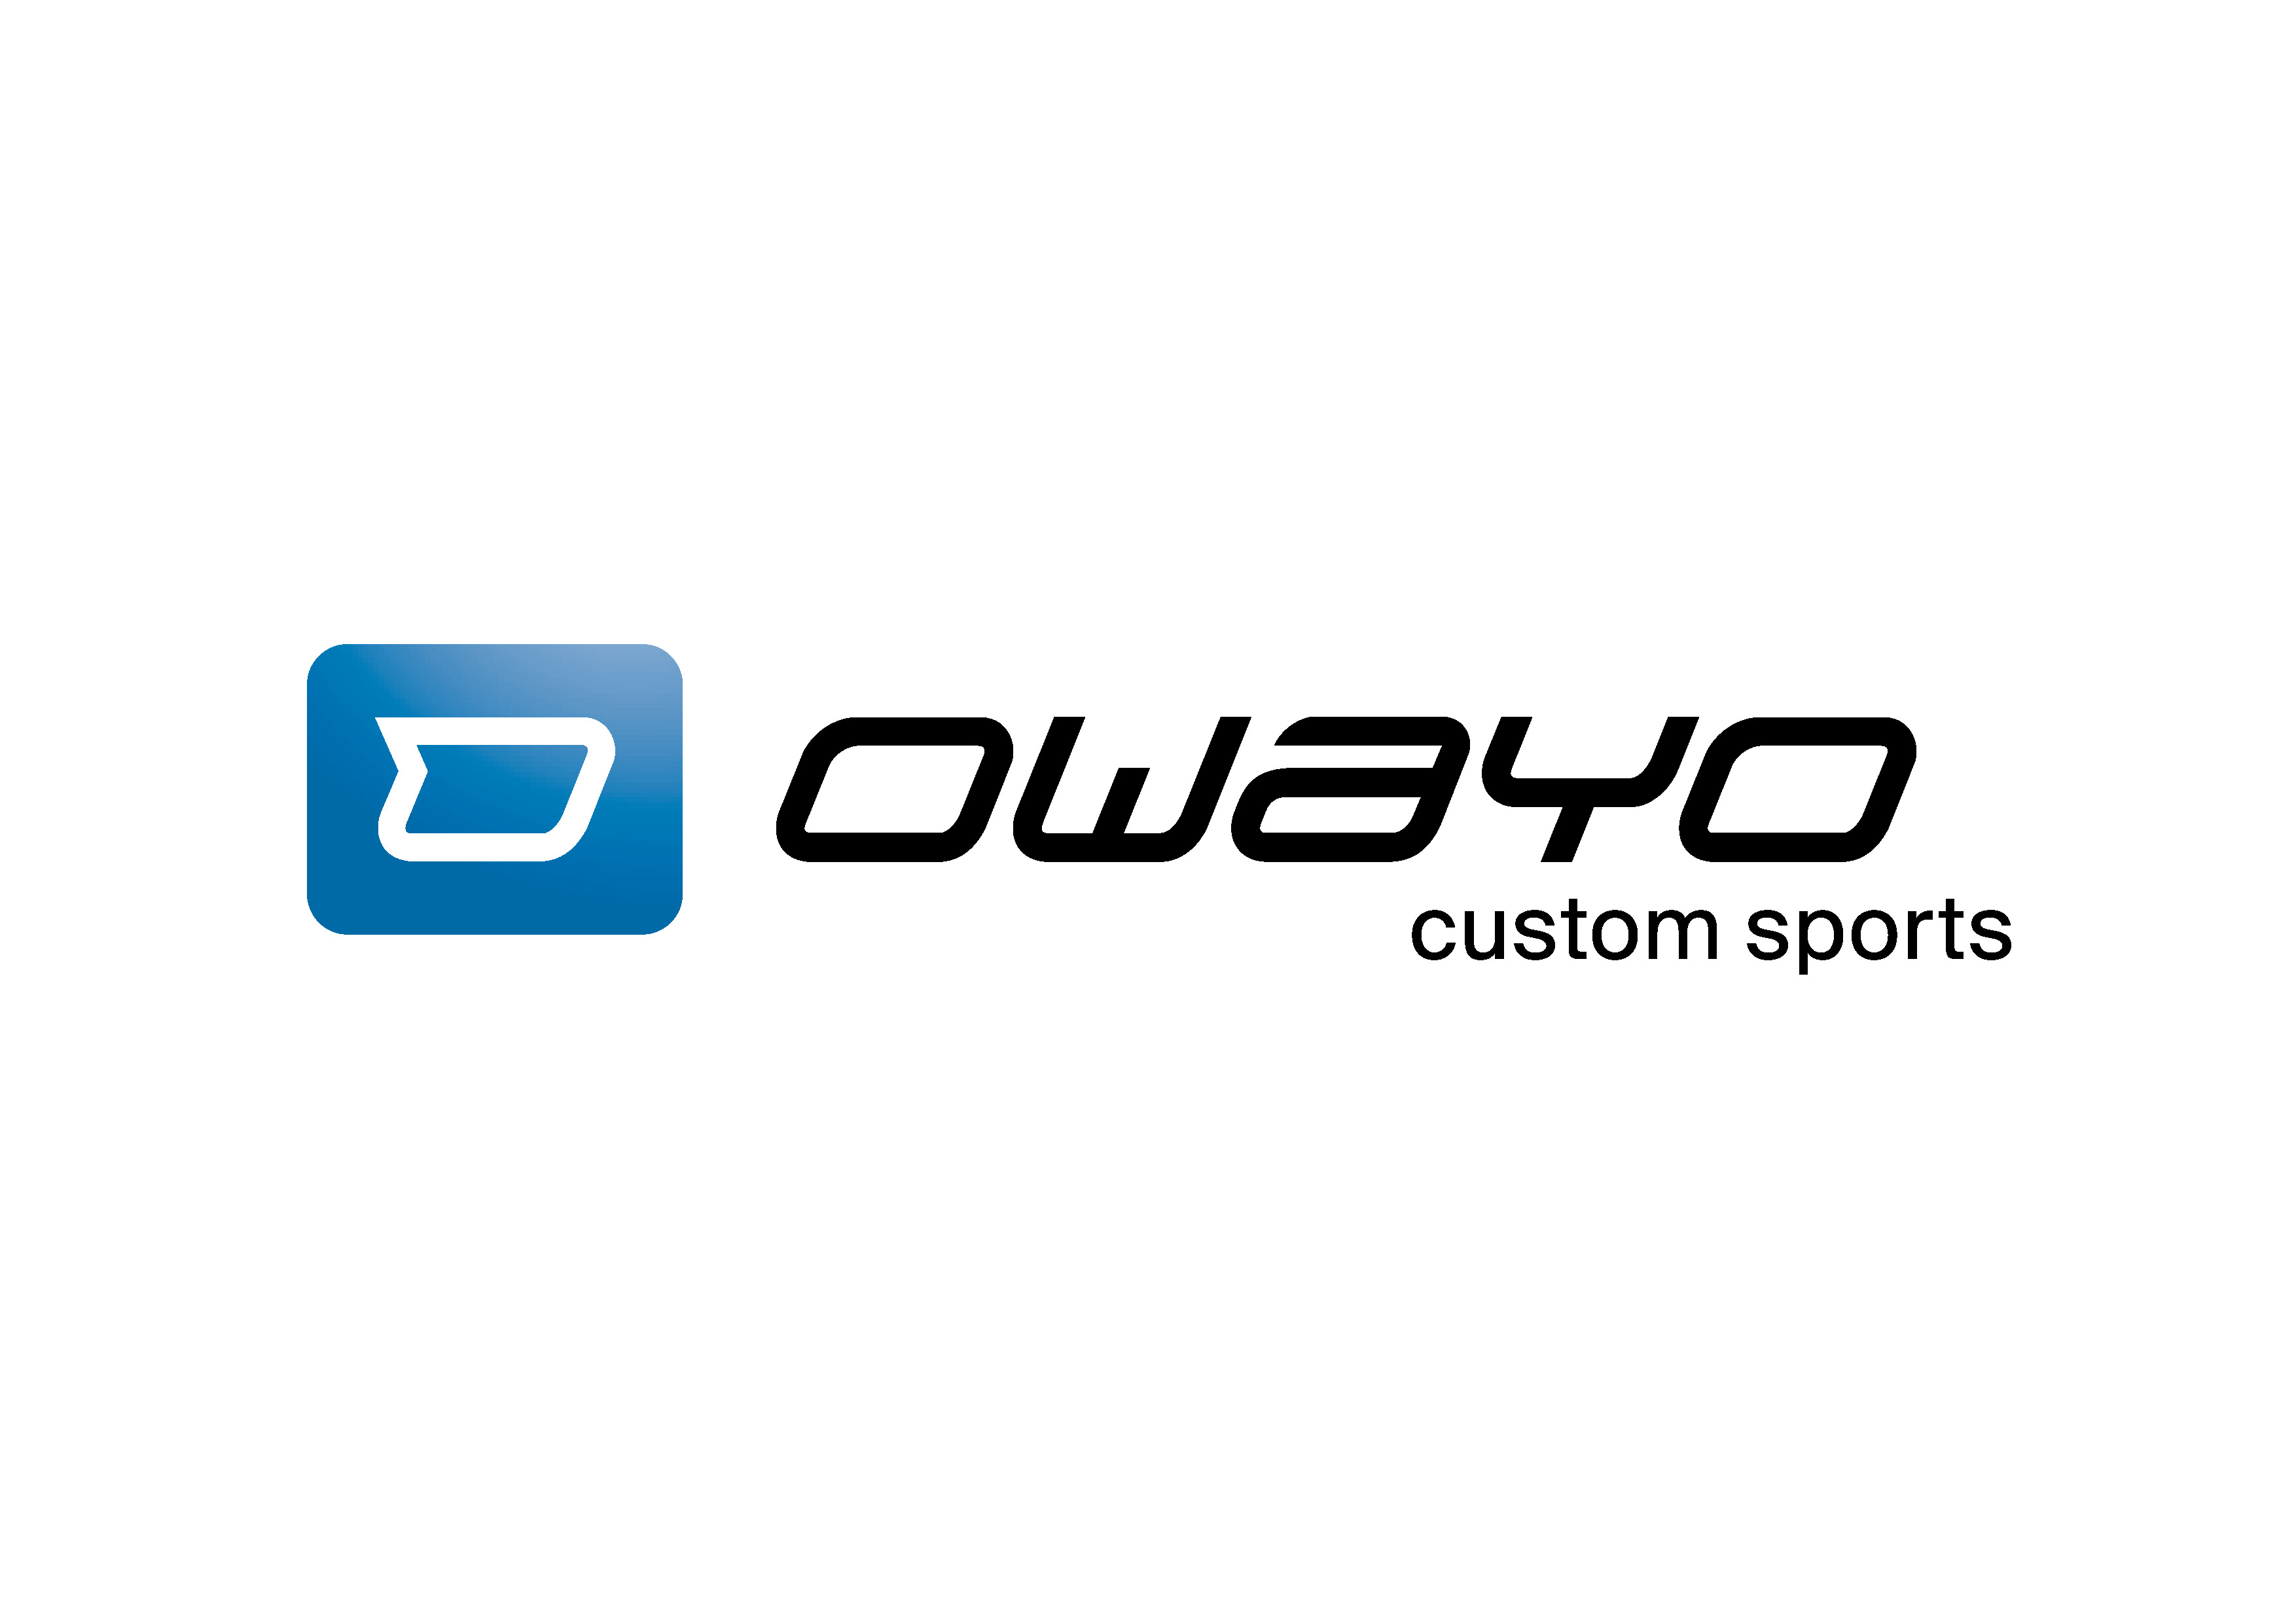 owayo GmbH